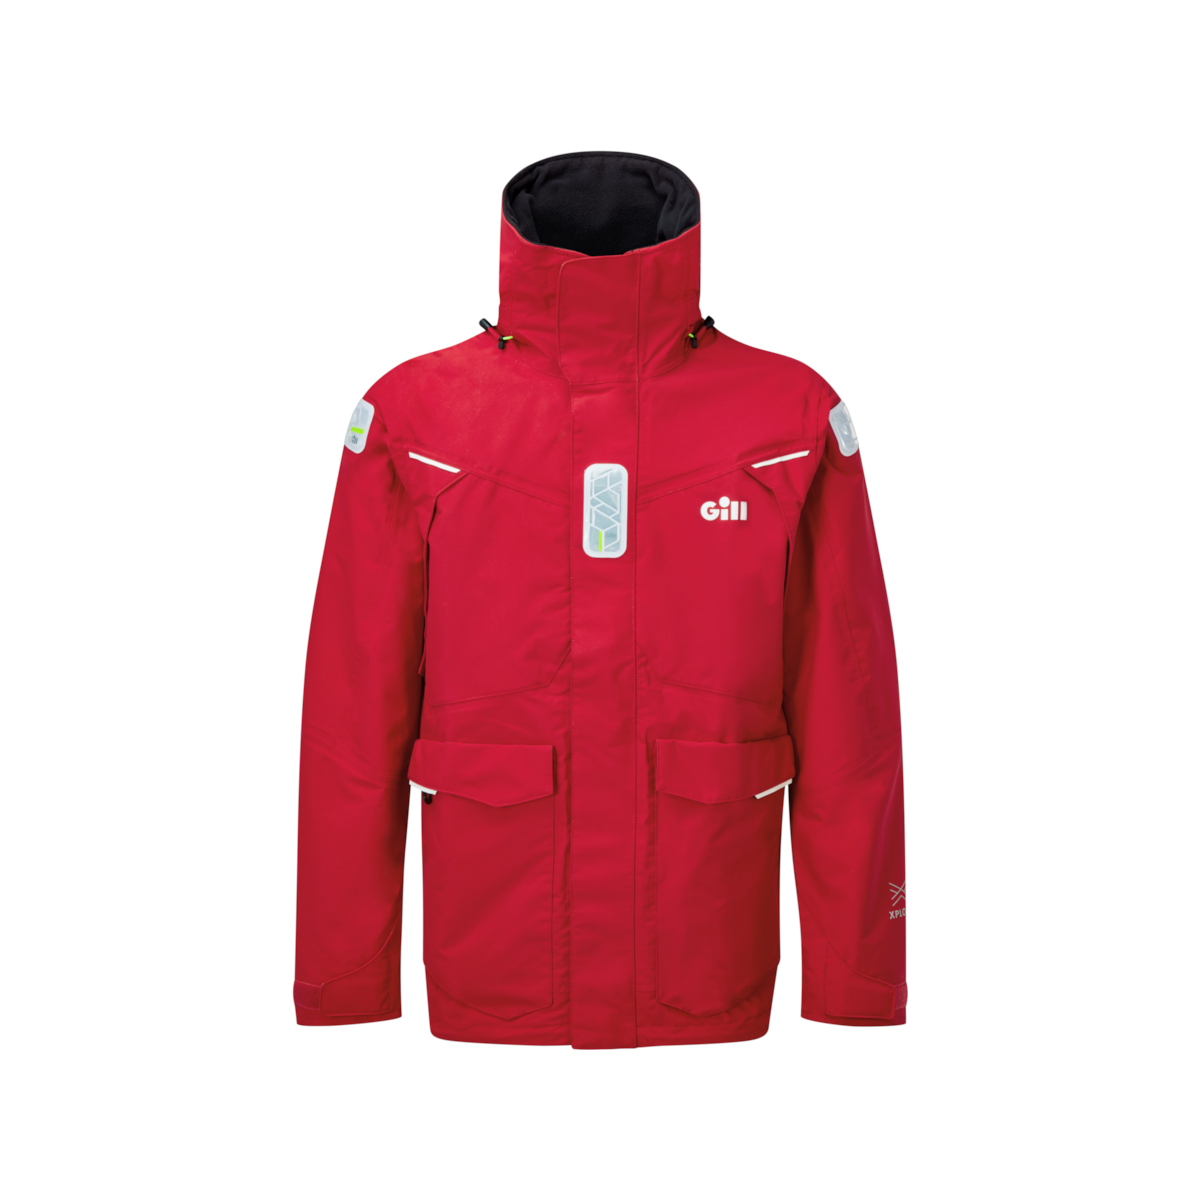 Gill OS25 veste de voile offshore homme rouge, taille L